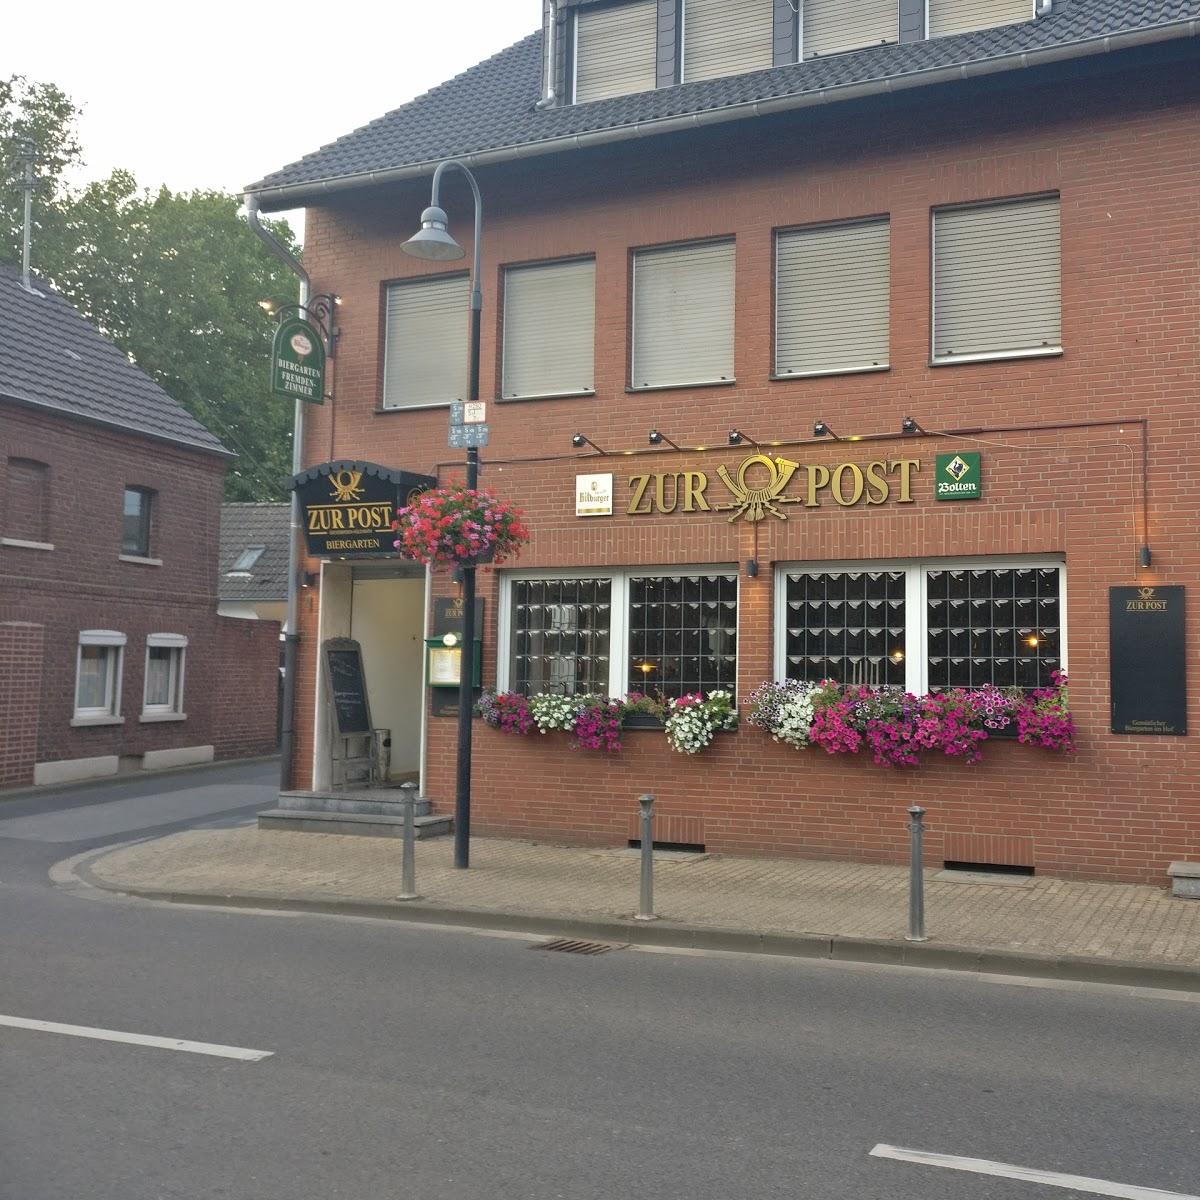 Restaurant "Zur Post" in Grevenbroich